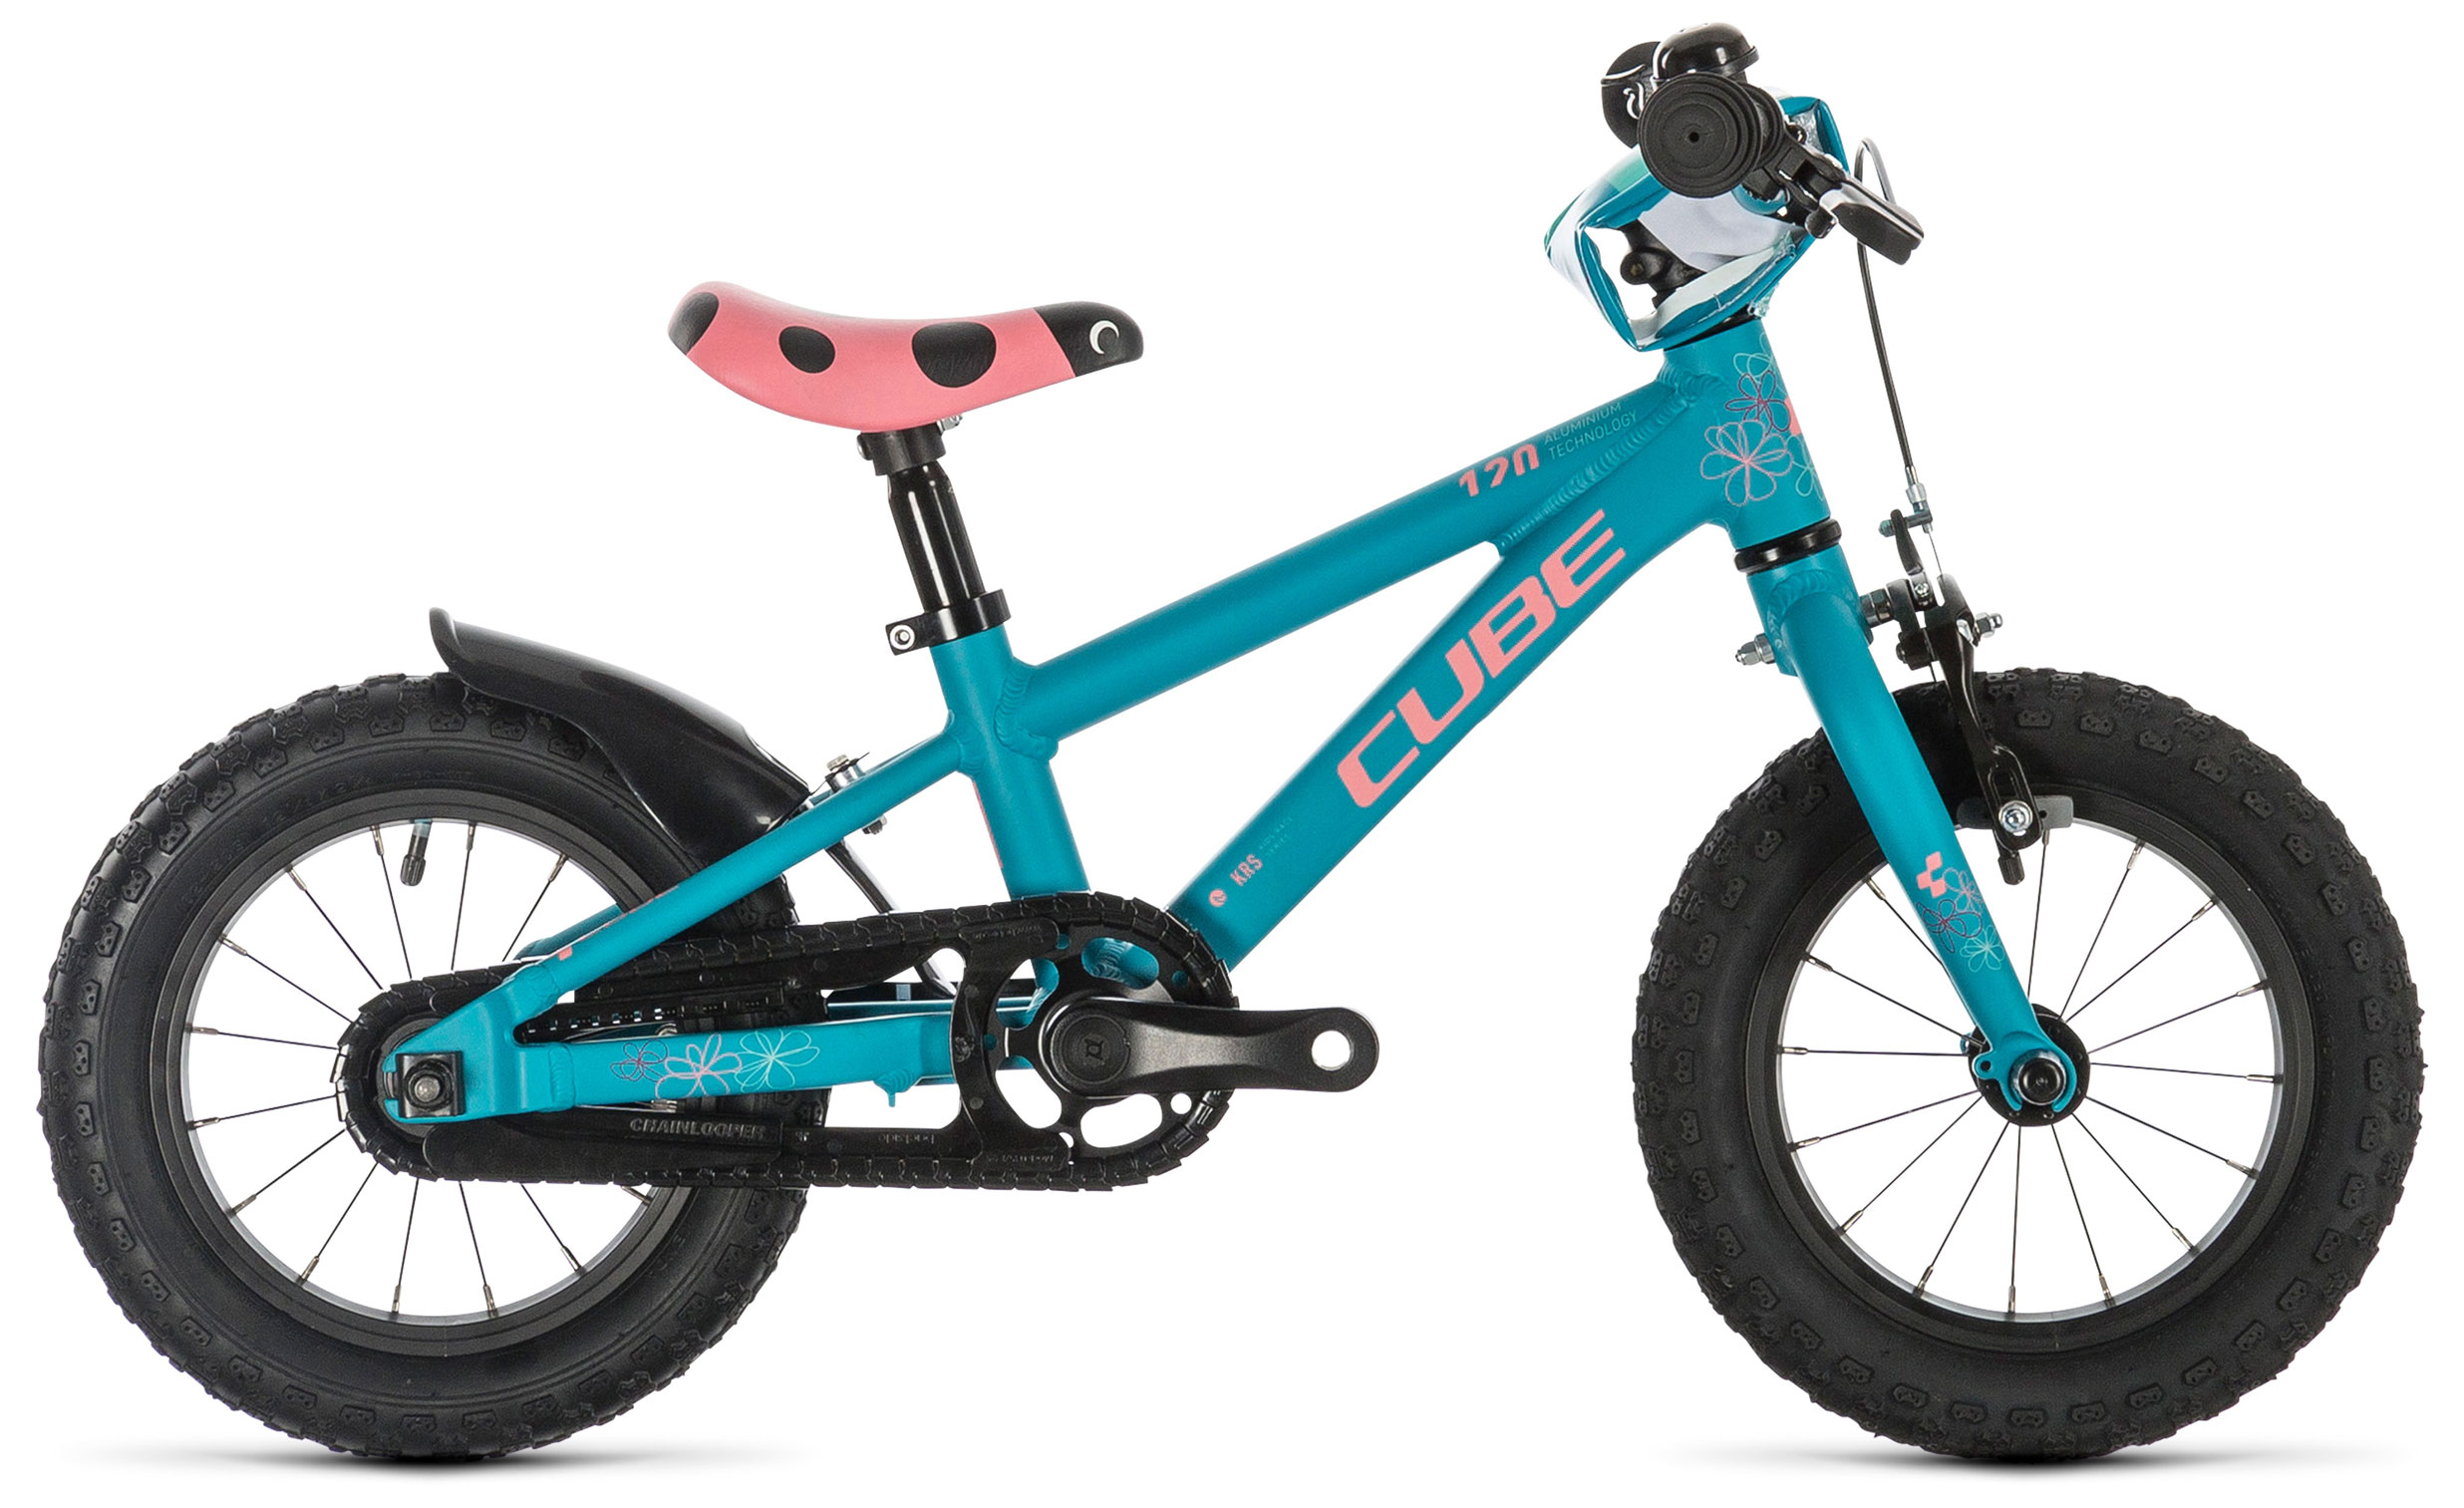  Отзывы о Детском велосипеде Cube Cubie 120 Girl 2019